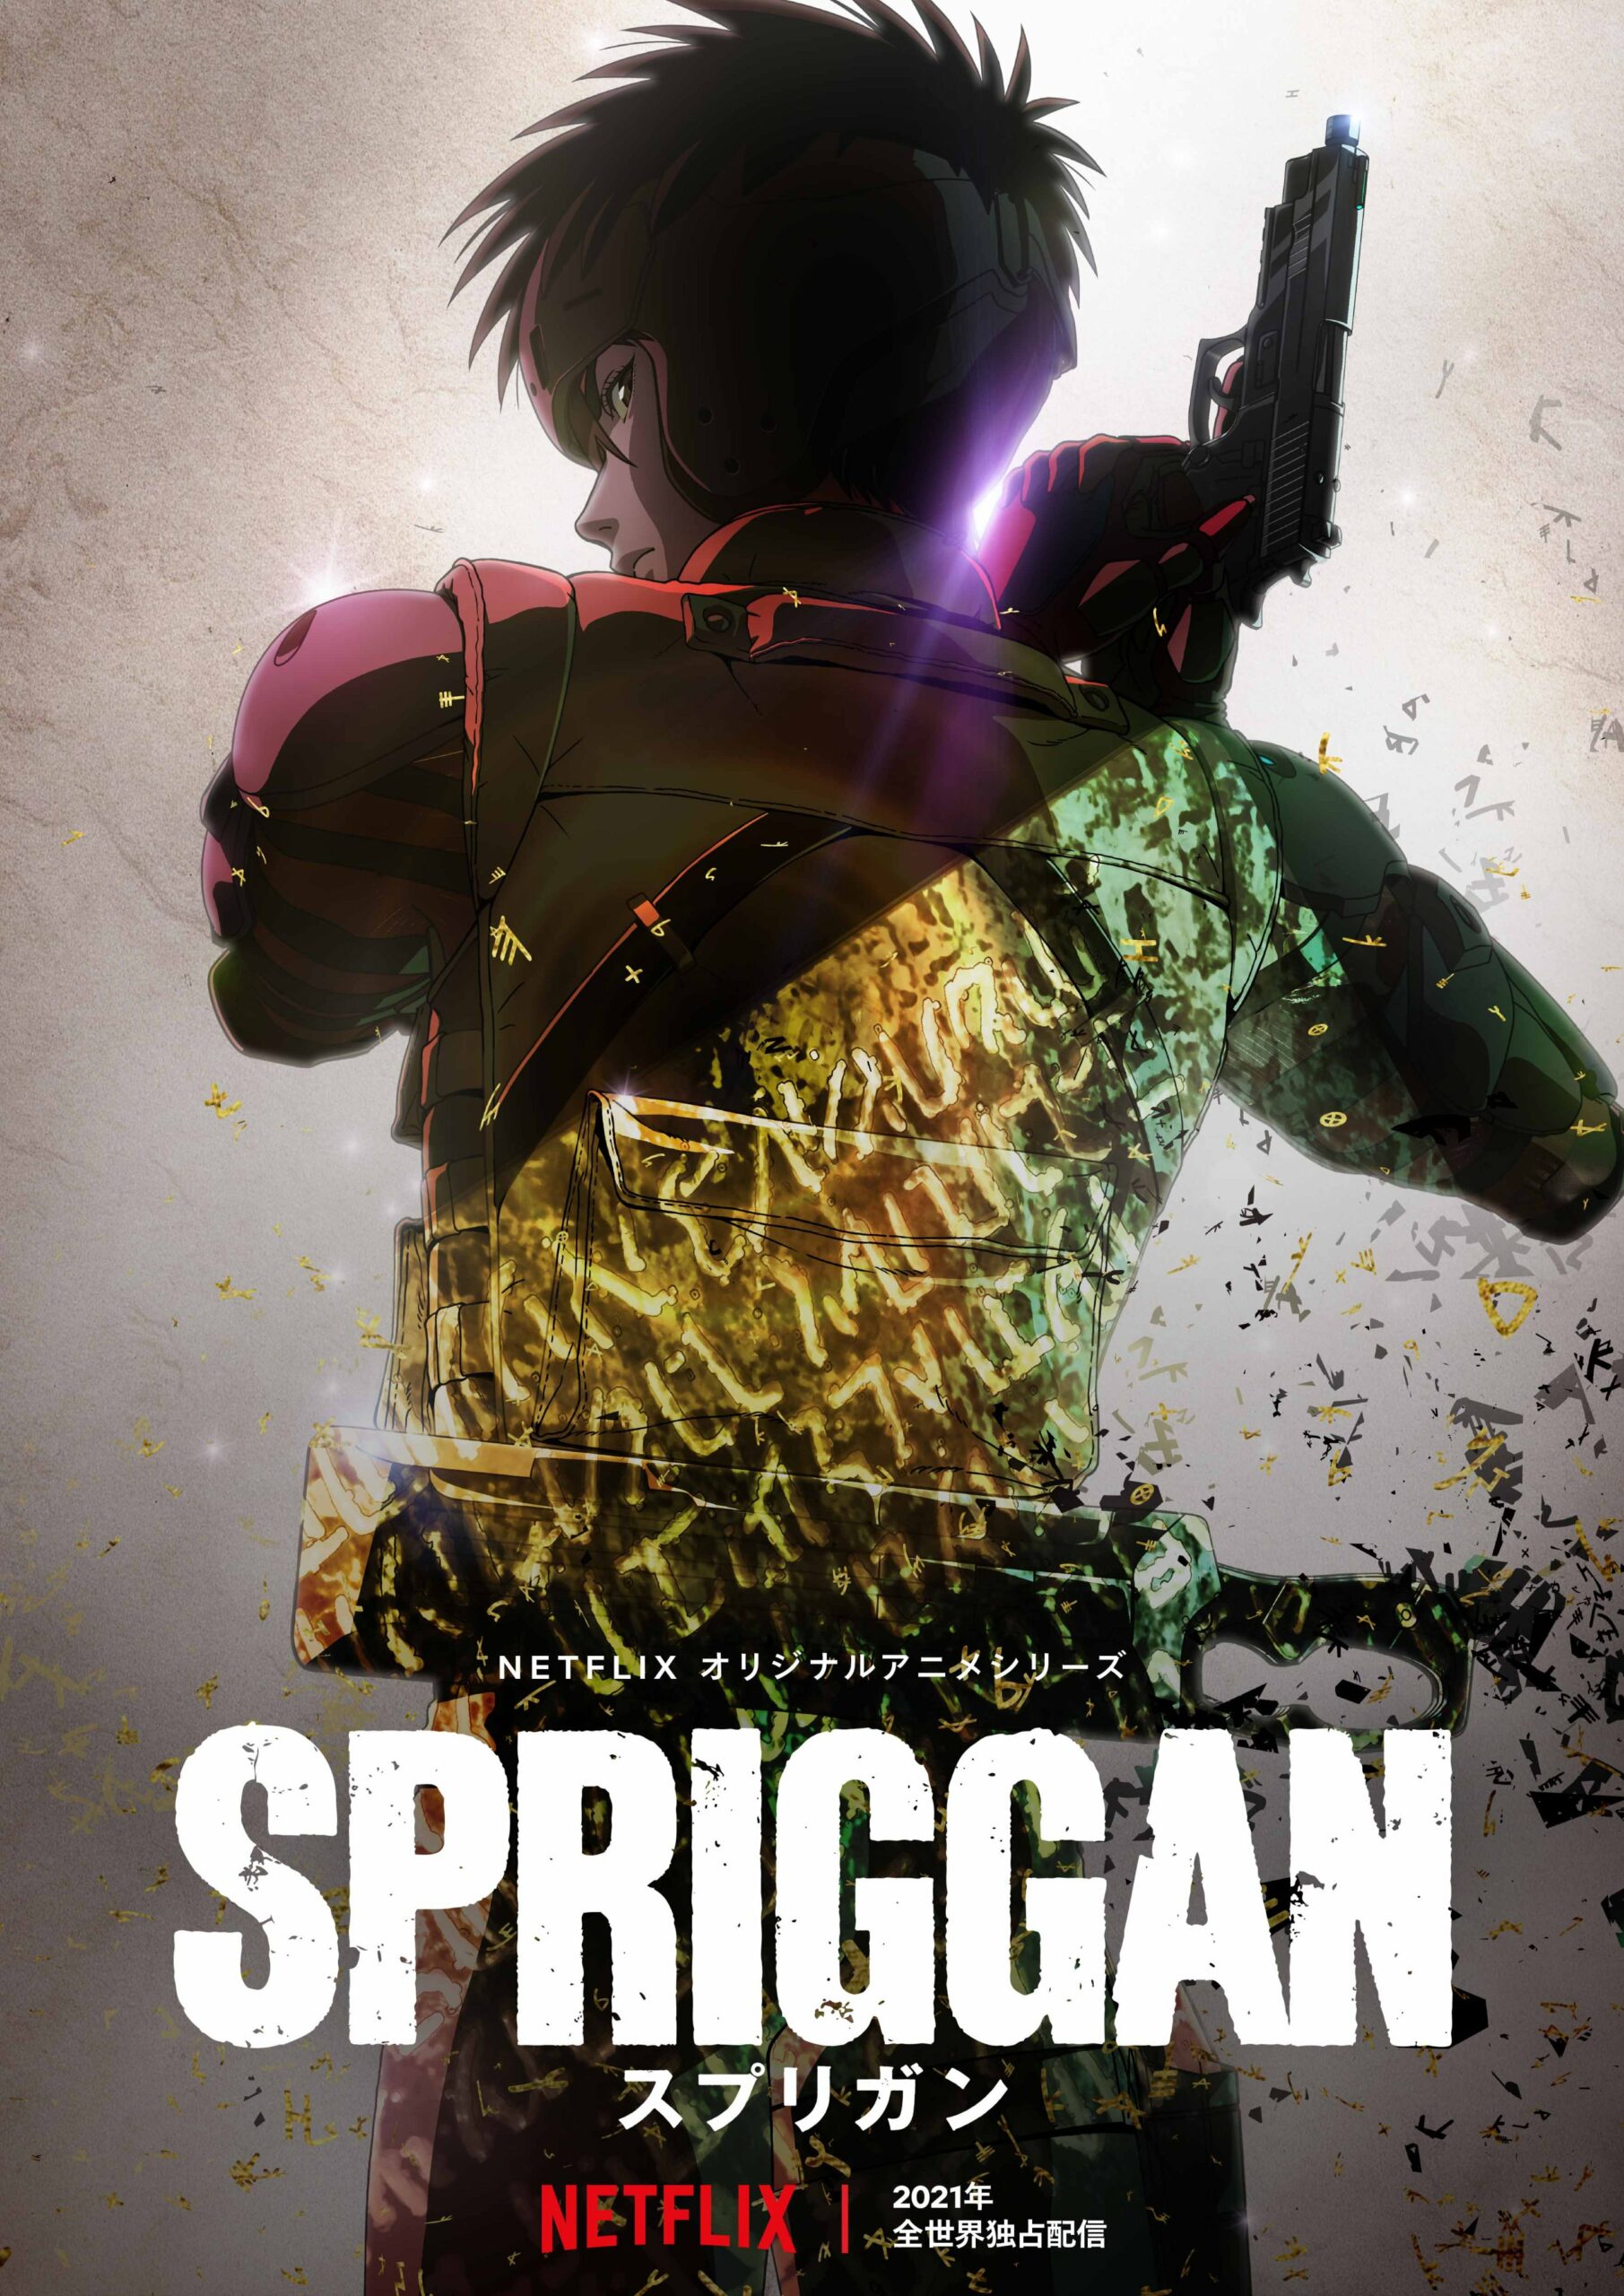 Spriggan - Trailer dublado, Netflix divulga novo trailer dublado de  Spriggan! A série de 6 episódios estreia dia 18 de junho na plataforma.